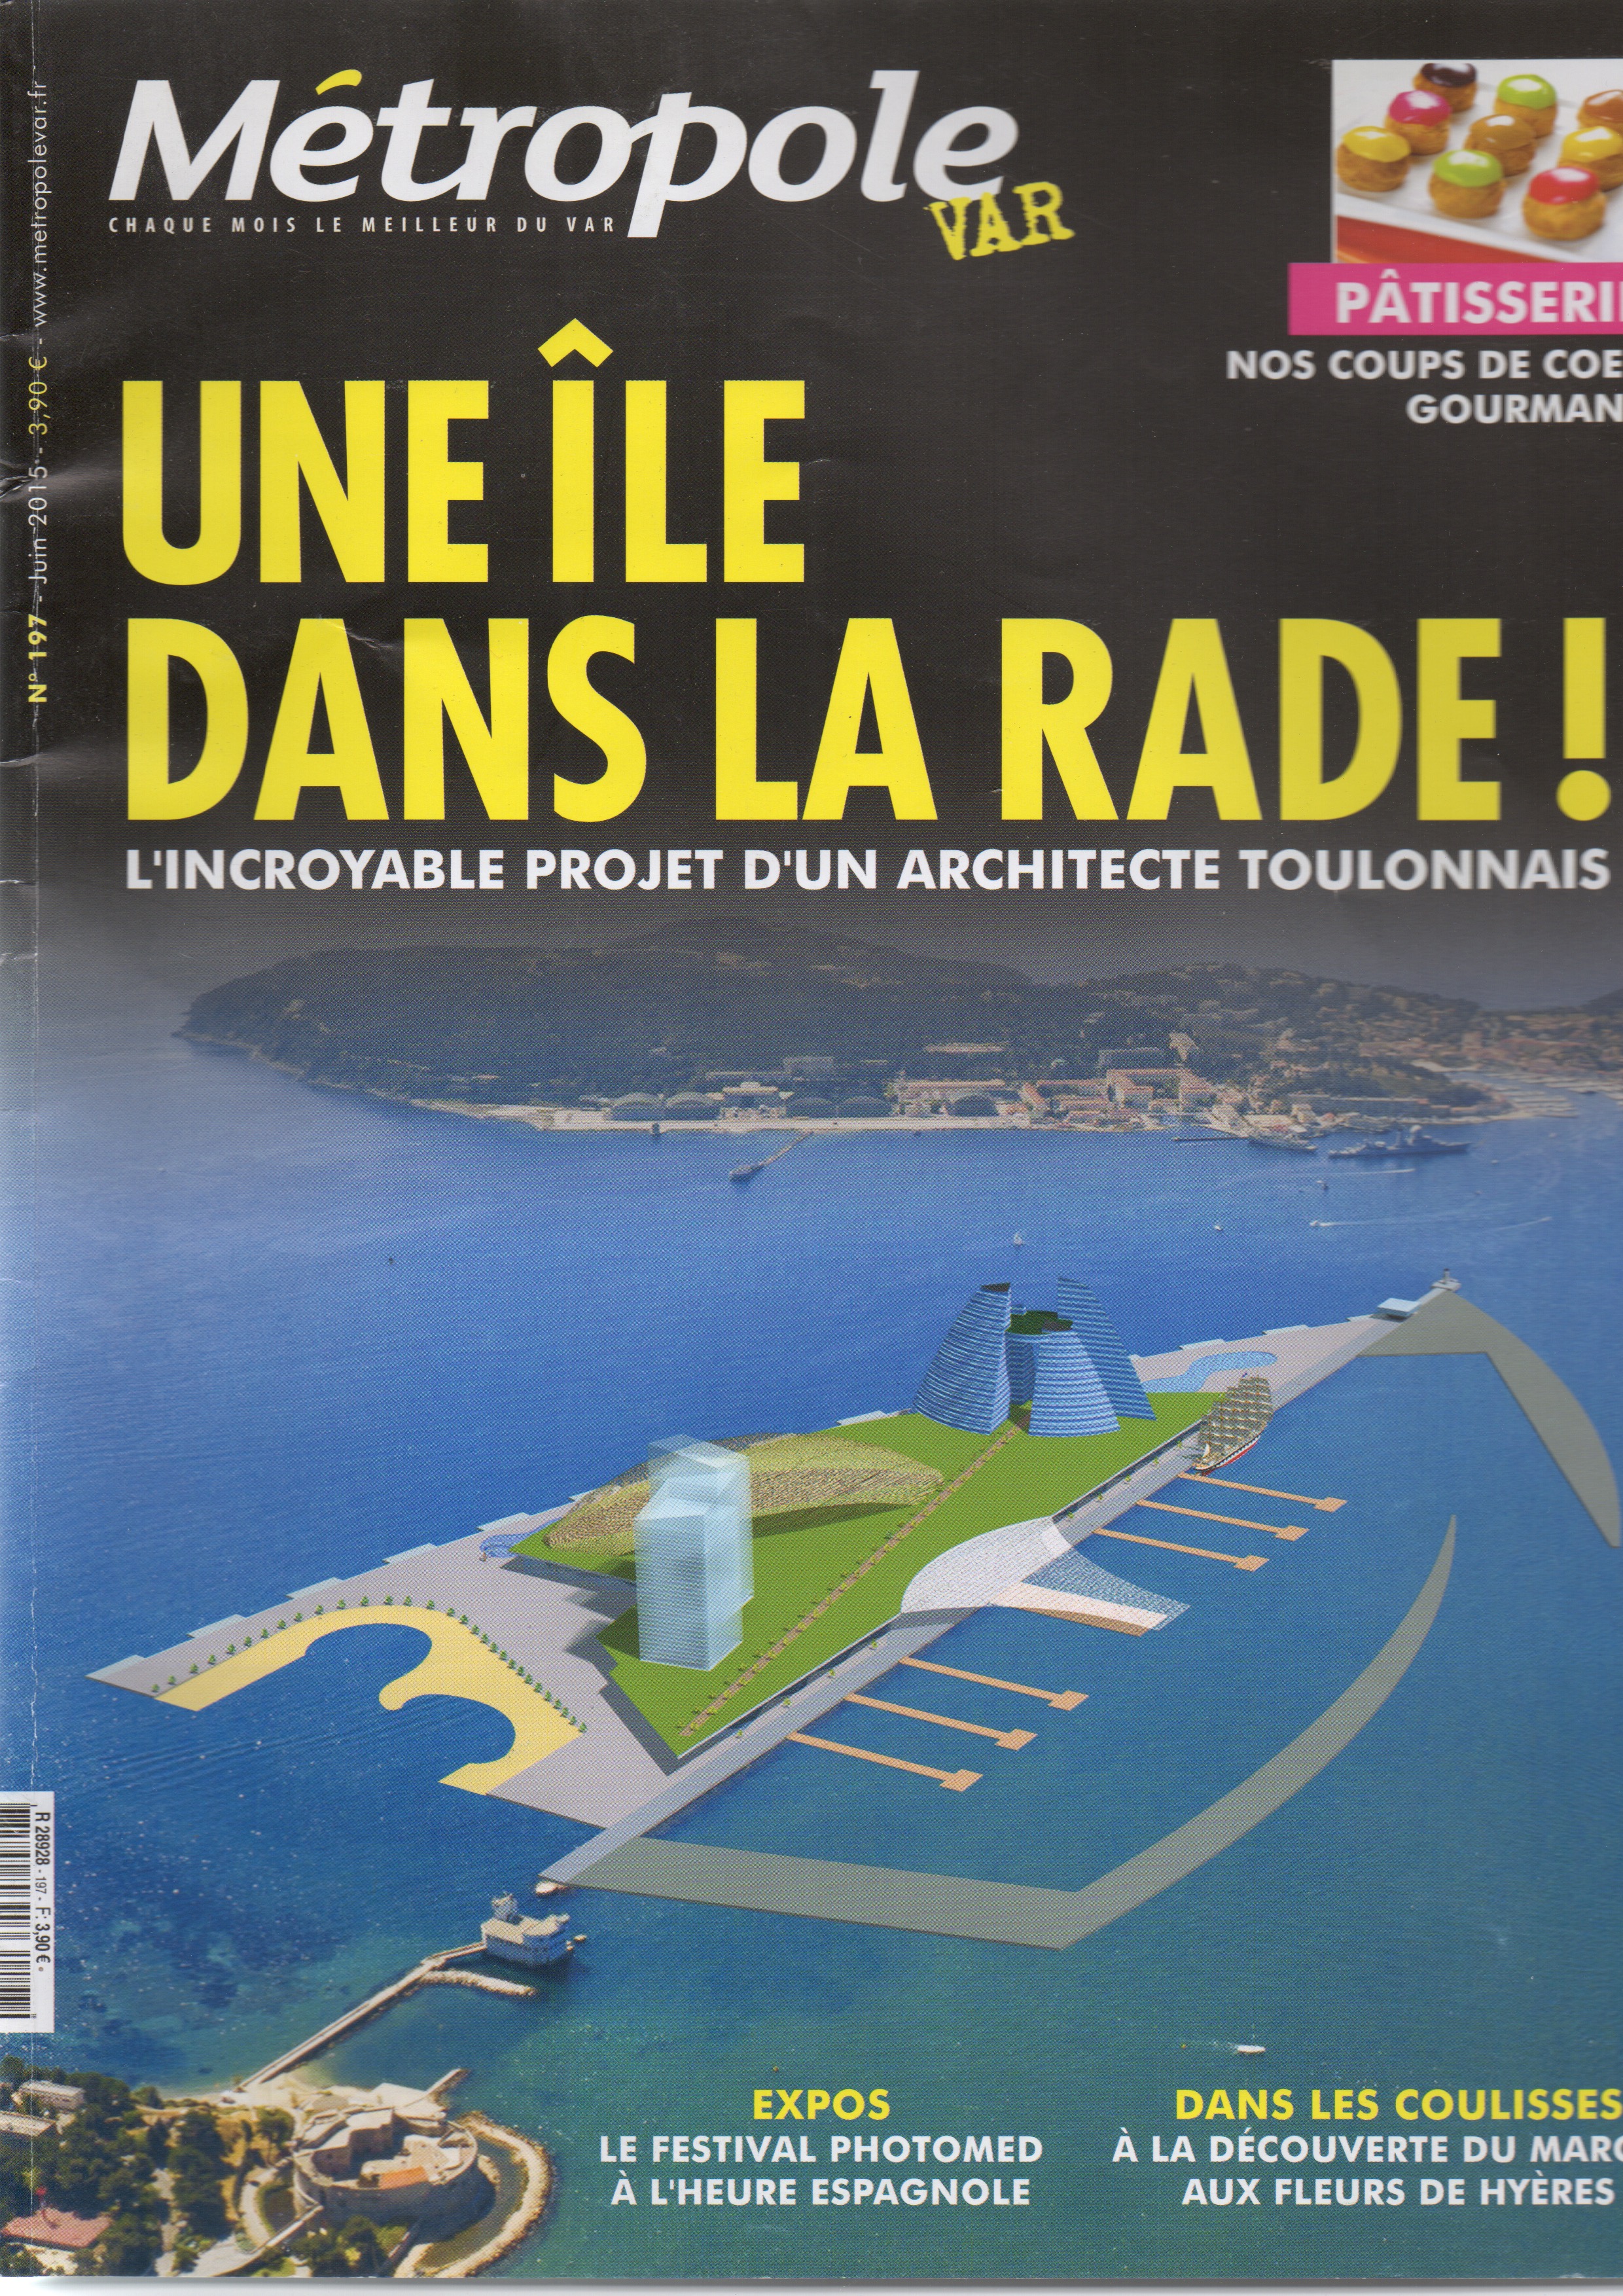 Magazine Métropole Var Juin 2015